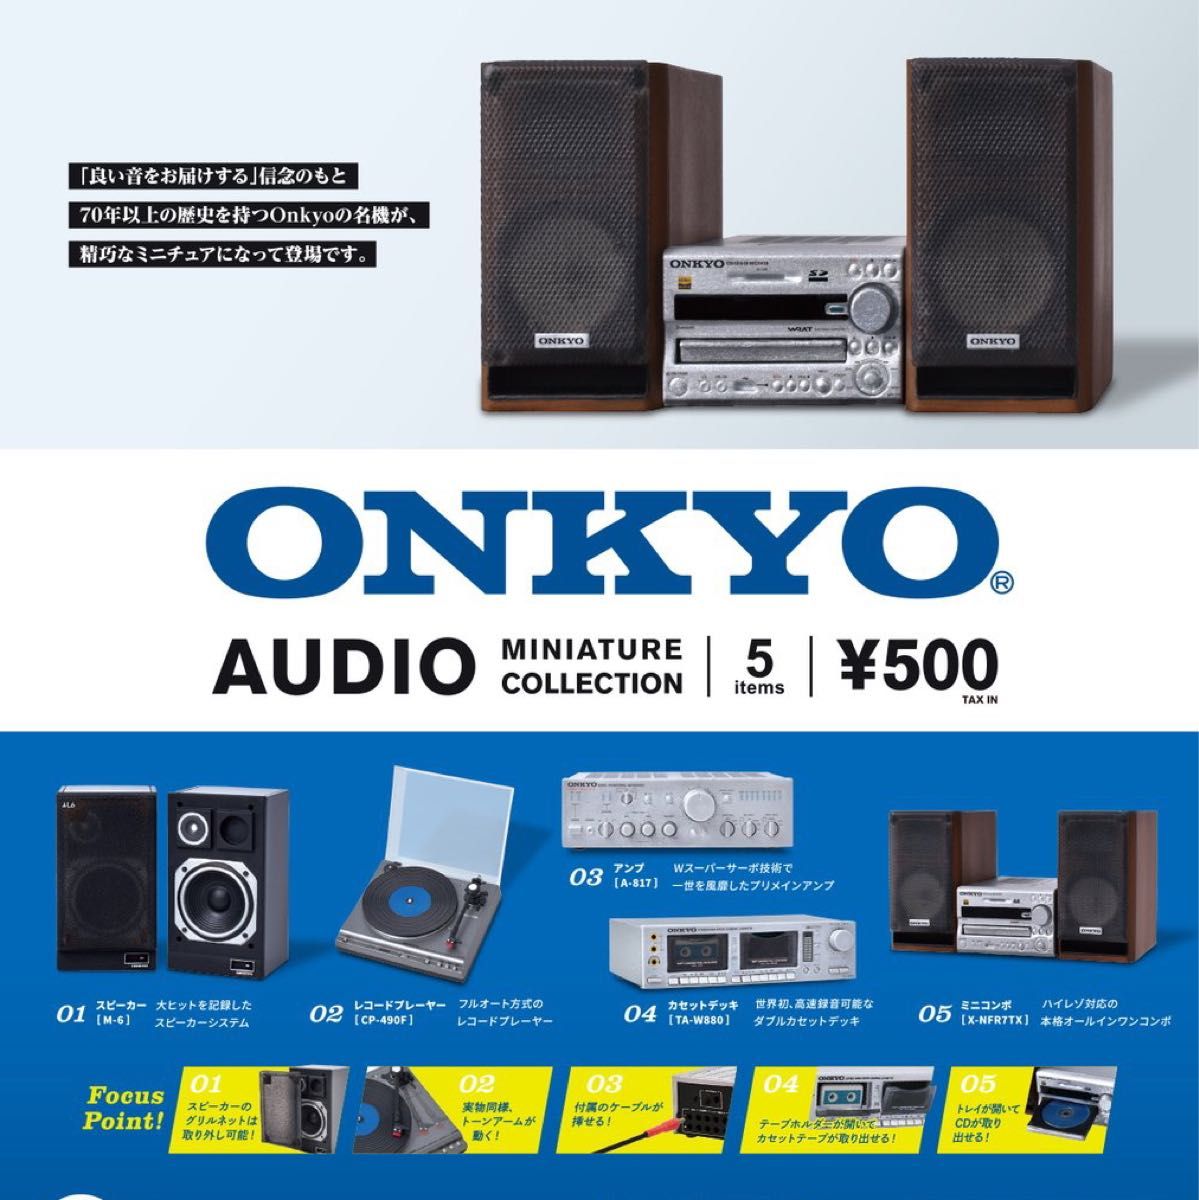 ONKYO オーディオ ミニチュア コレクション 全5種 ガチャ オンキョー